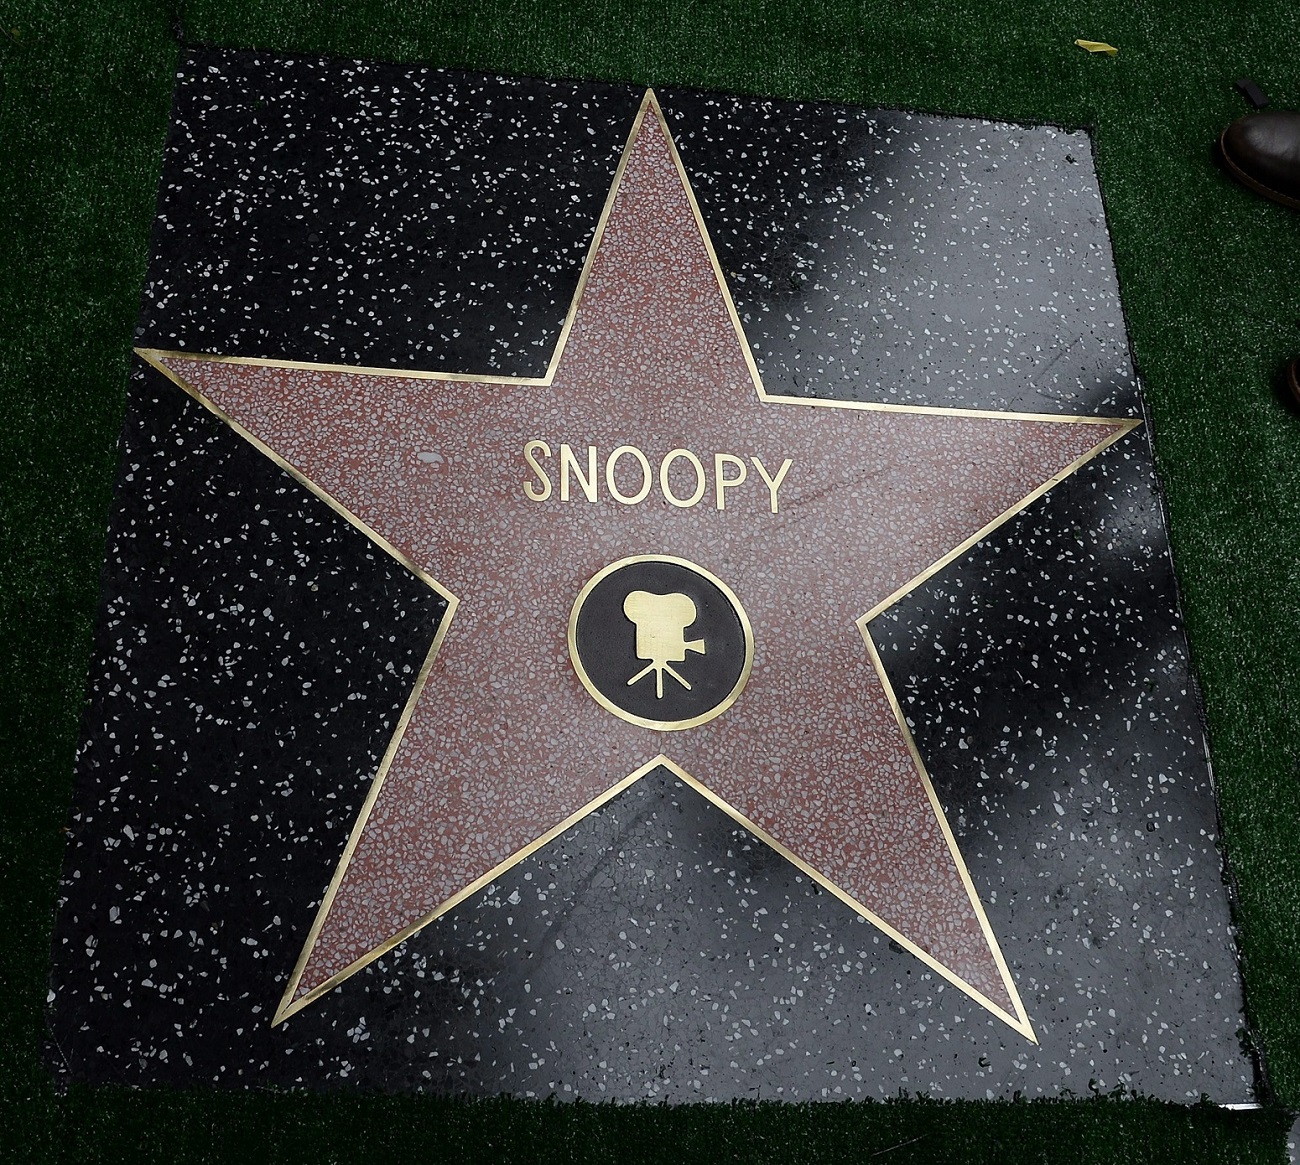 Snoopy csillaga a Hollywoodi hírességek sétányán